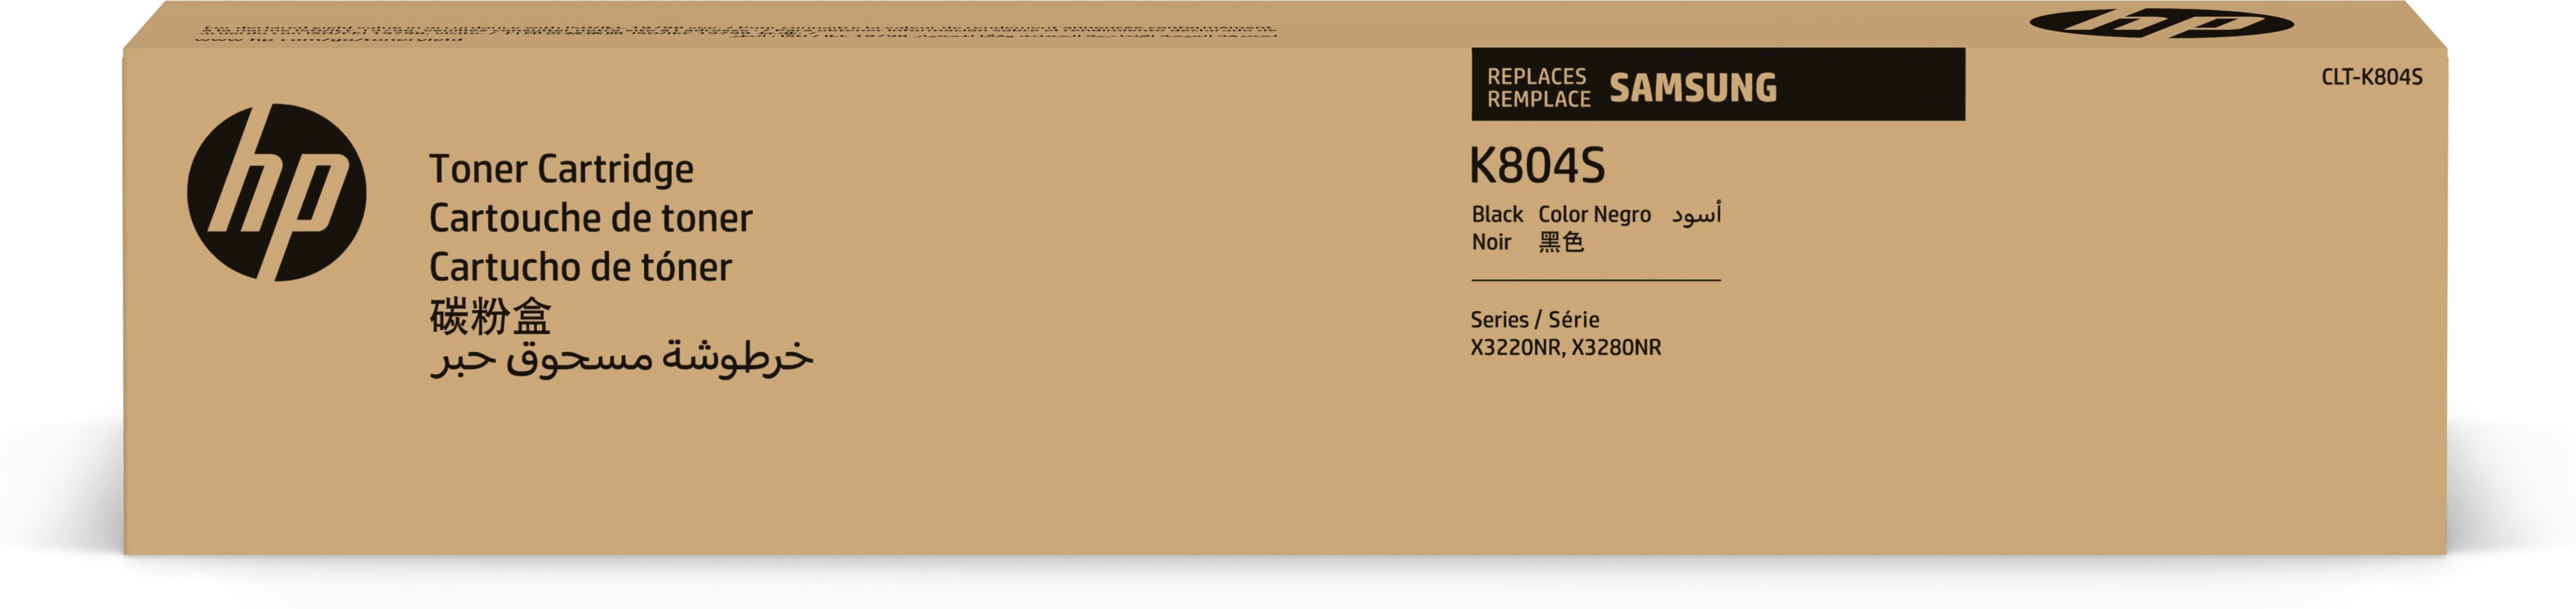 Samsung Toner CLT-K804S / SS586A Noir